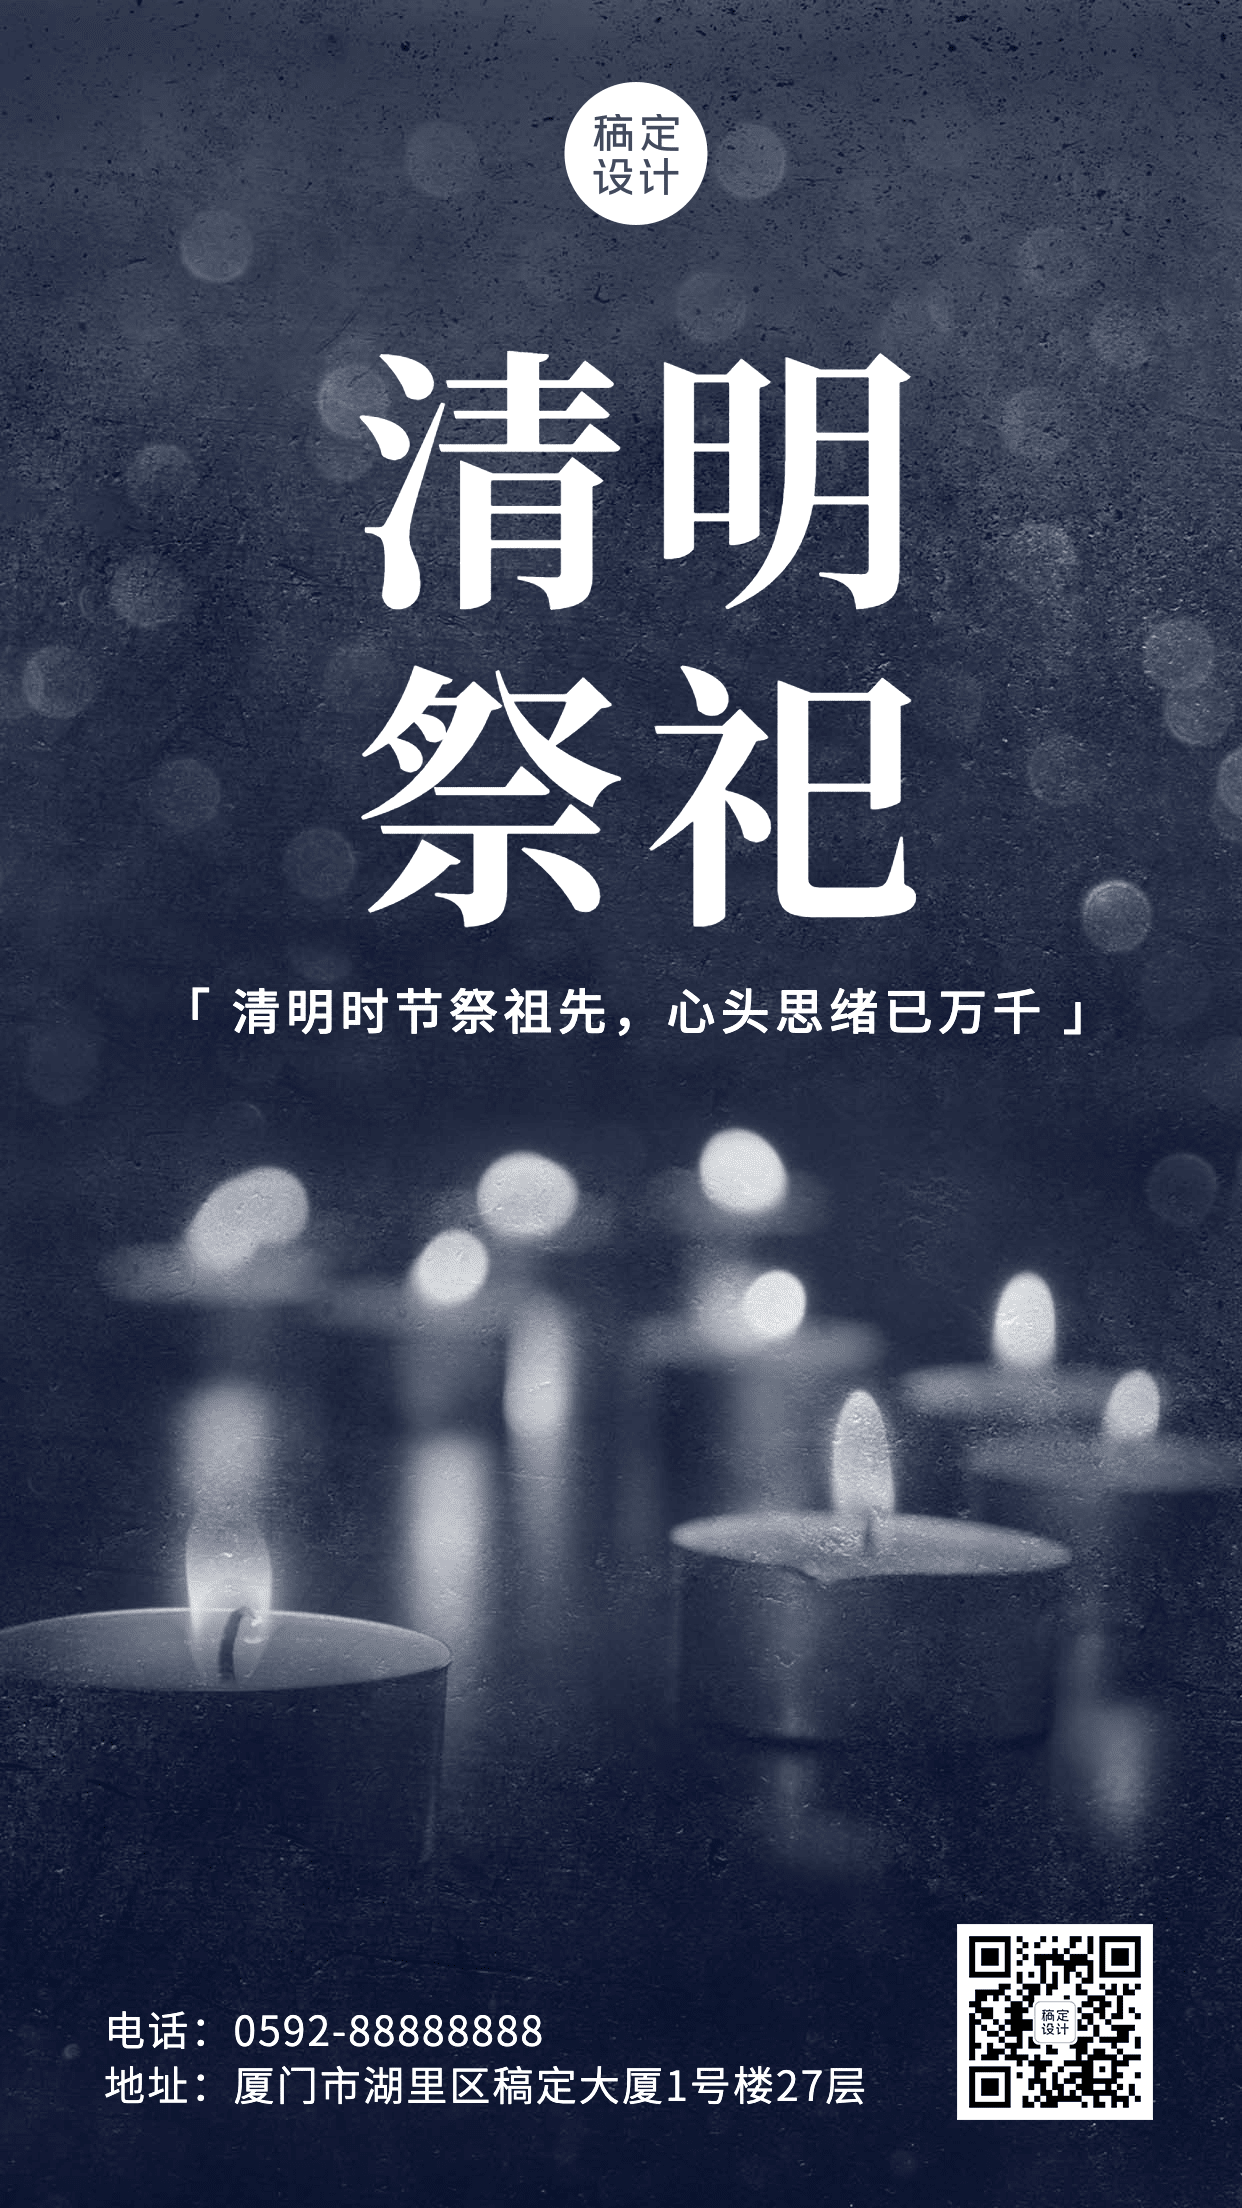 清明节节日祝福蜡烛哀悼手机海报预览效果